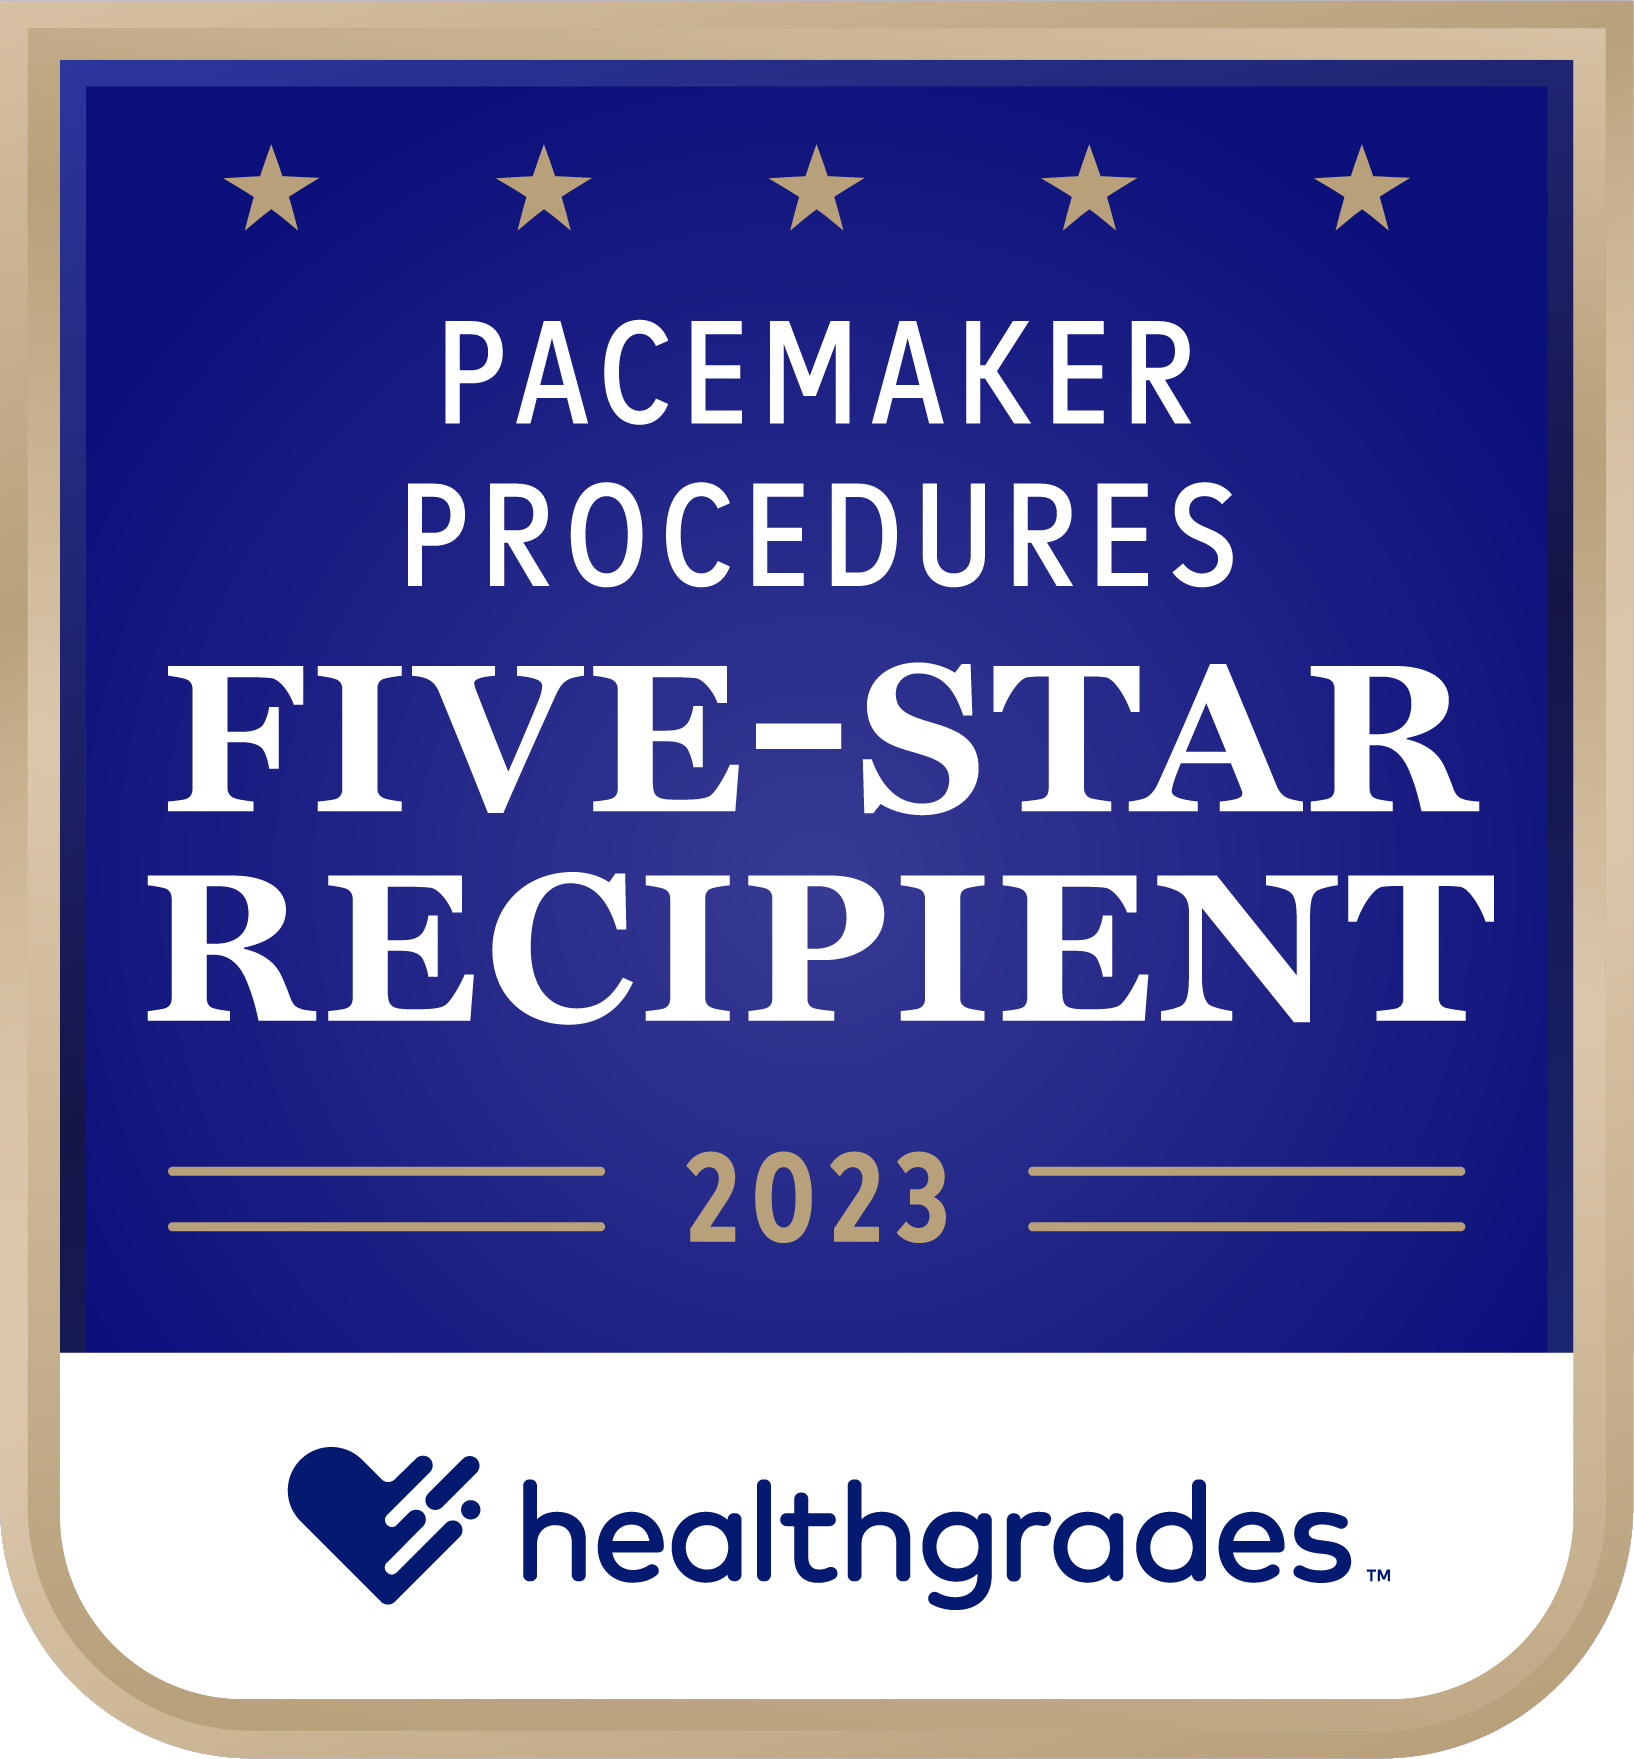 Five-Star_Pacemaker_Procedures_2023